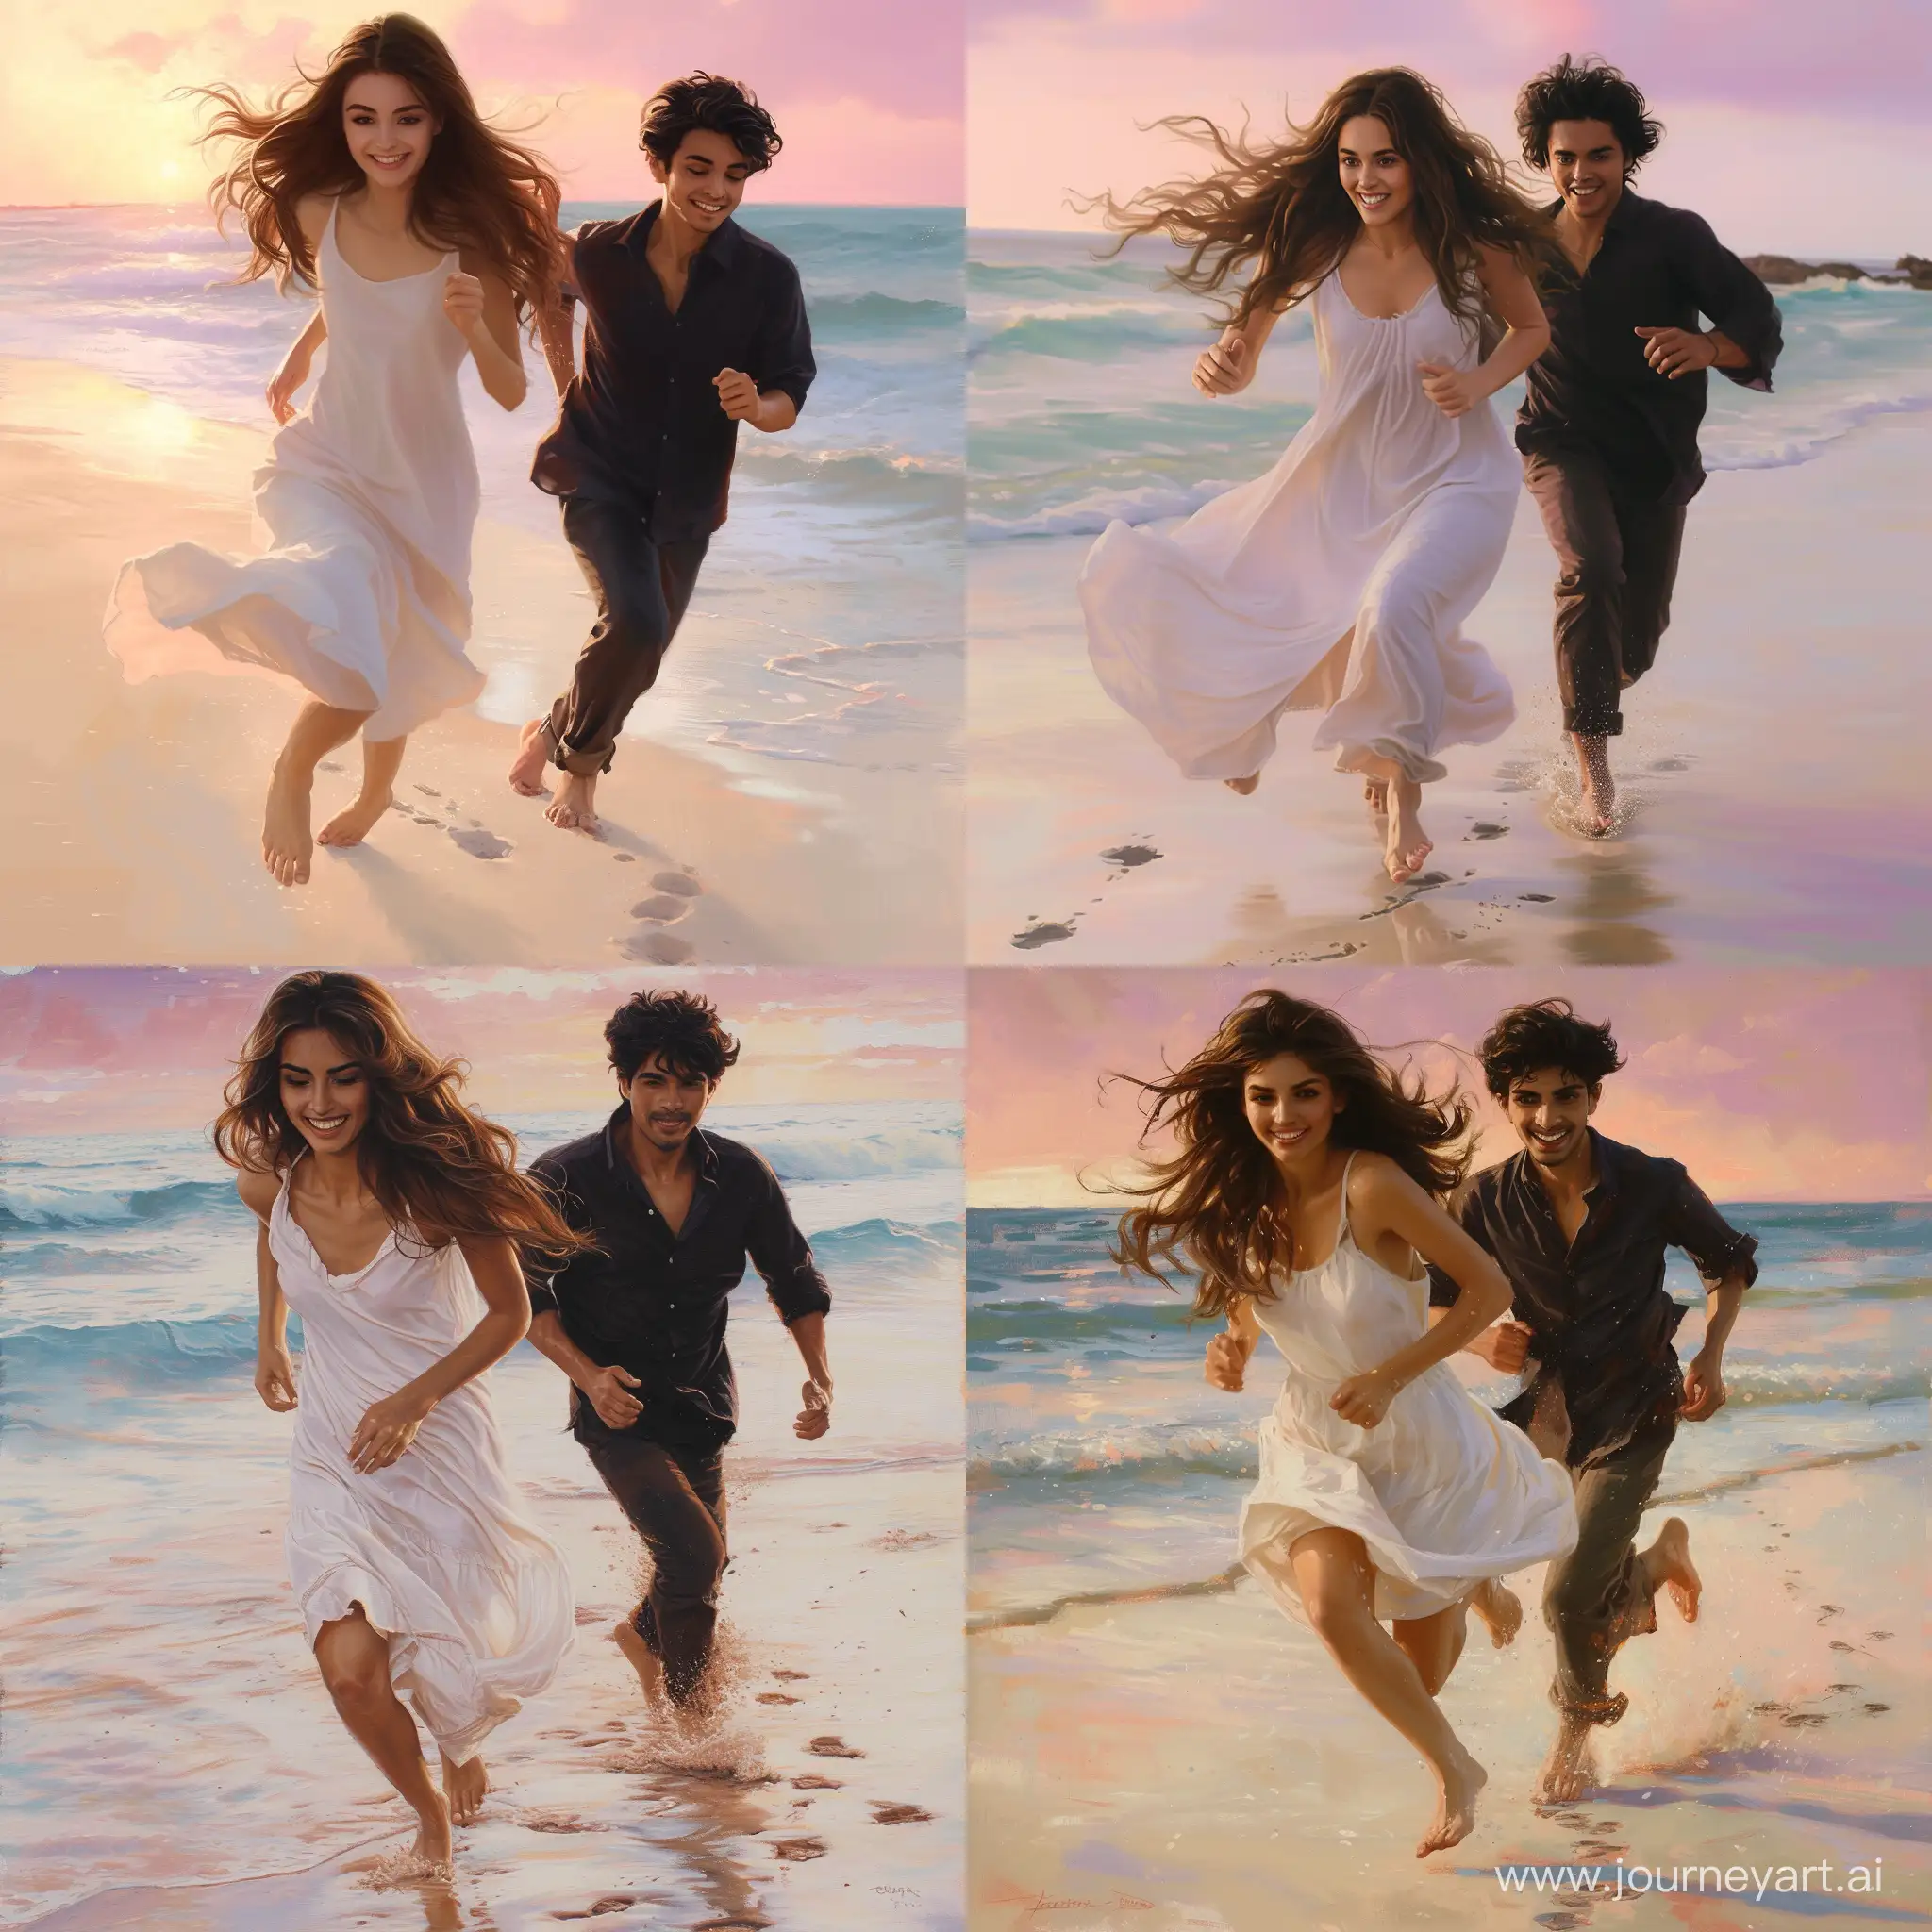 Joyful-Couple-Running-Barefoot-on-Seashore-at-Dawn